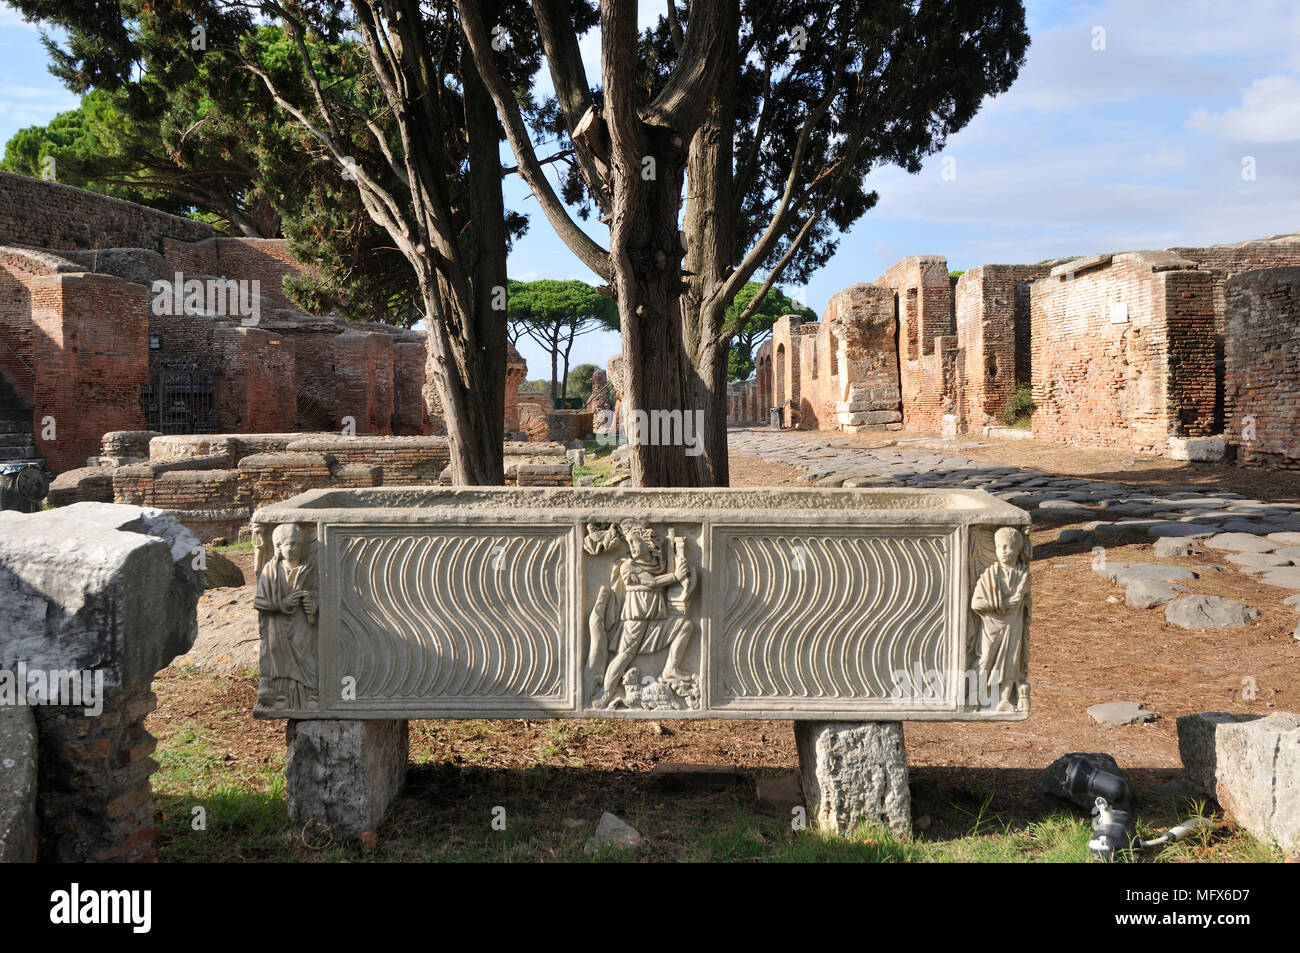 Tomba romana di Ostia Antica. In corrispondenza della foce del fiume Tevere, Ostia Roma era il porto marittimo di duemila anni fa. Italia Foto Stock